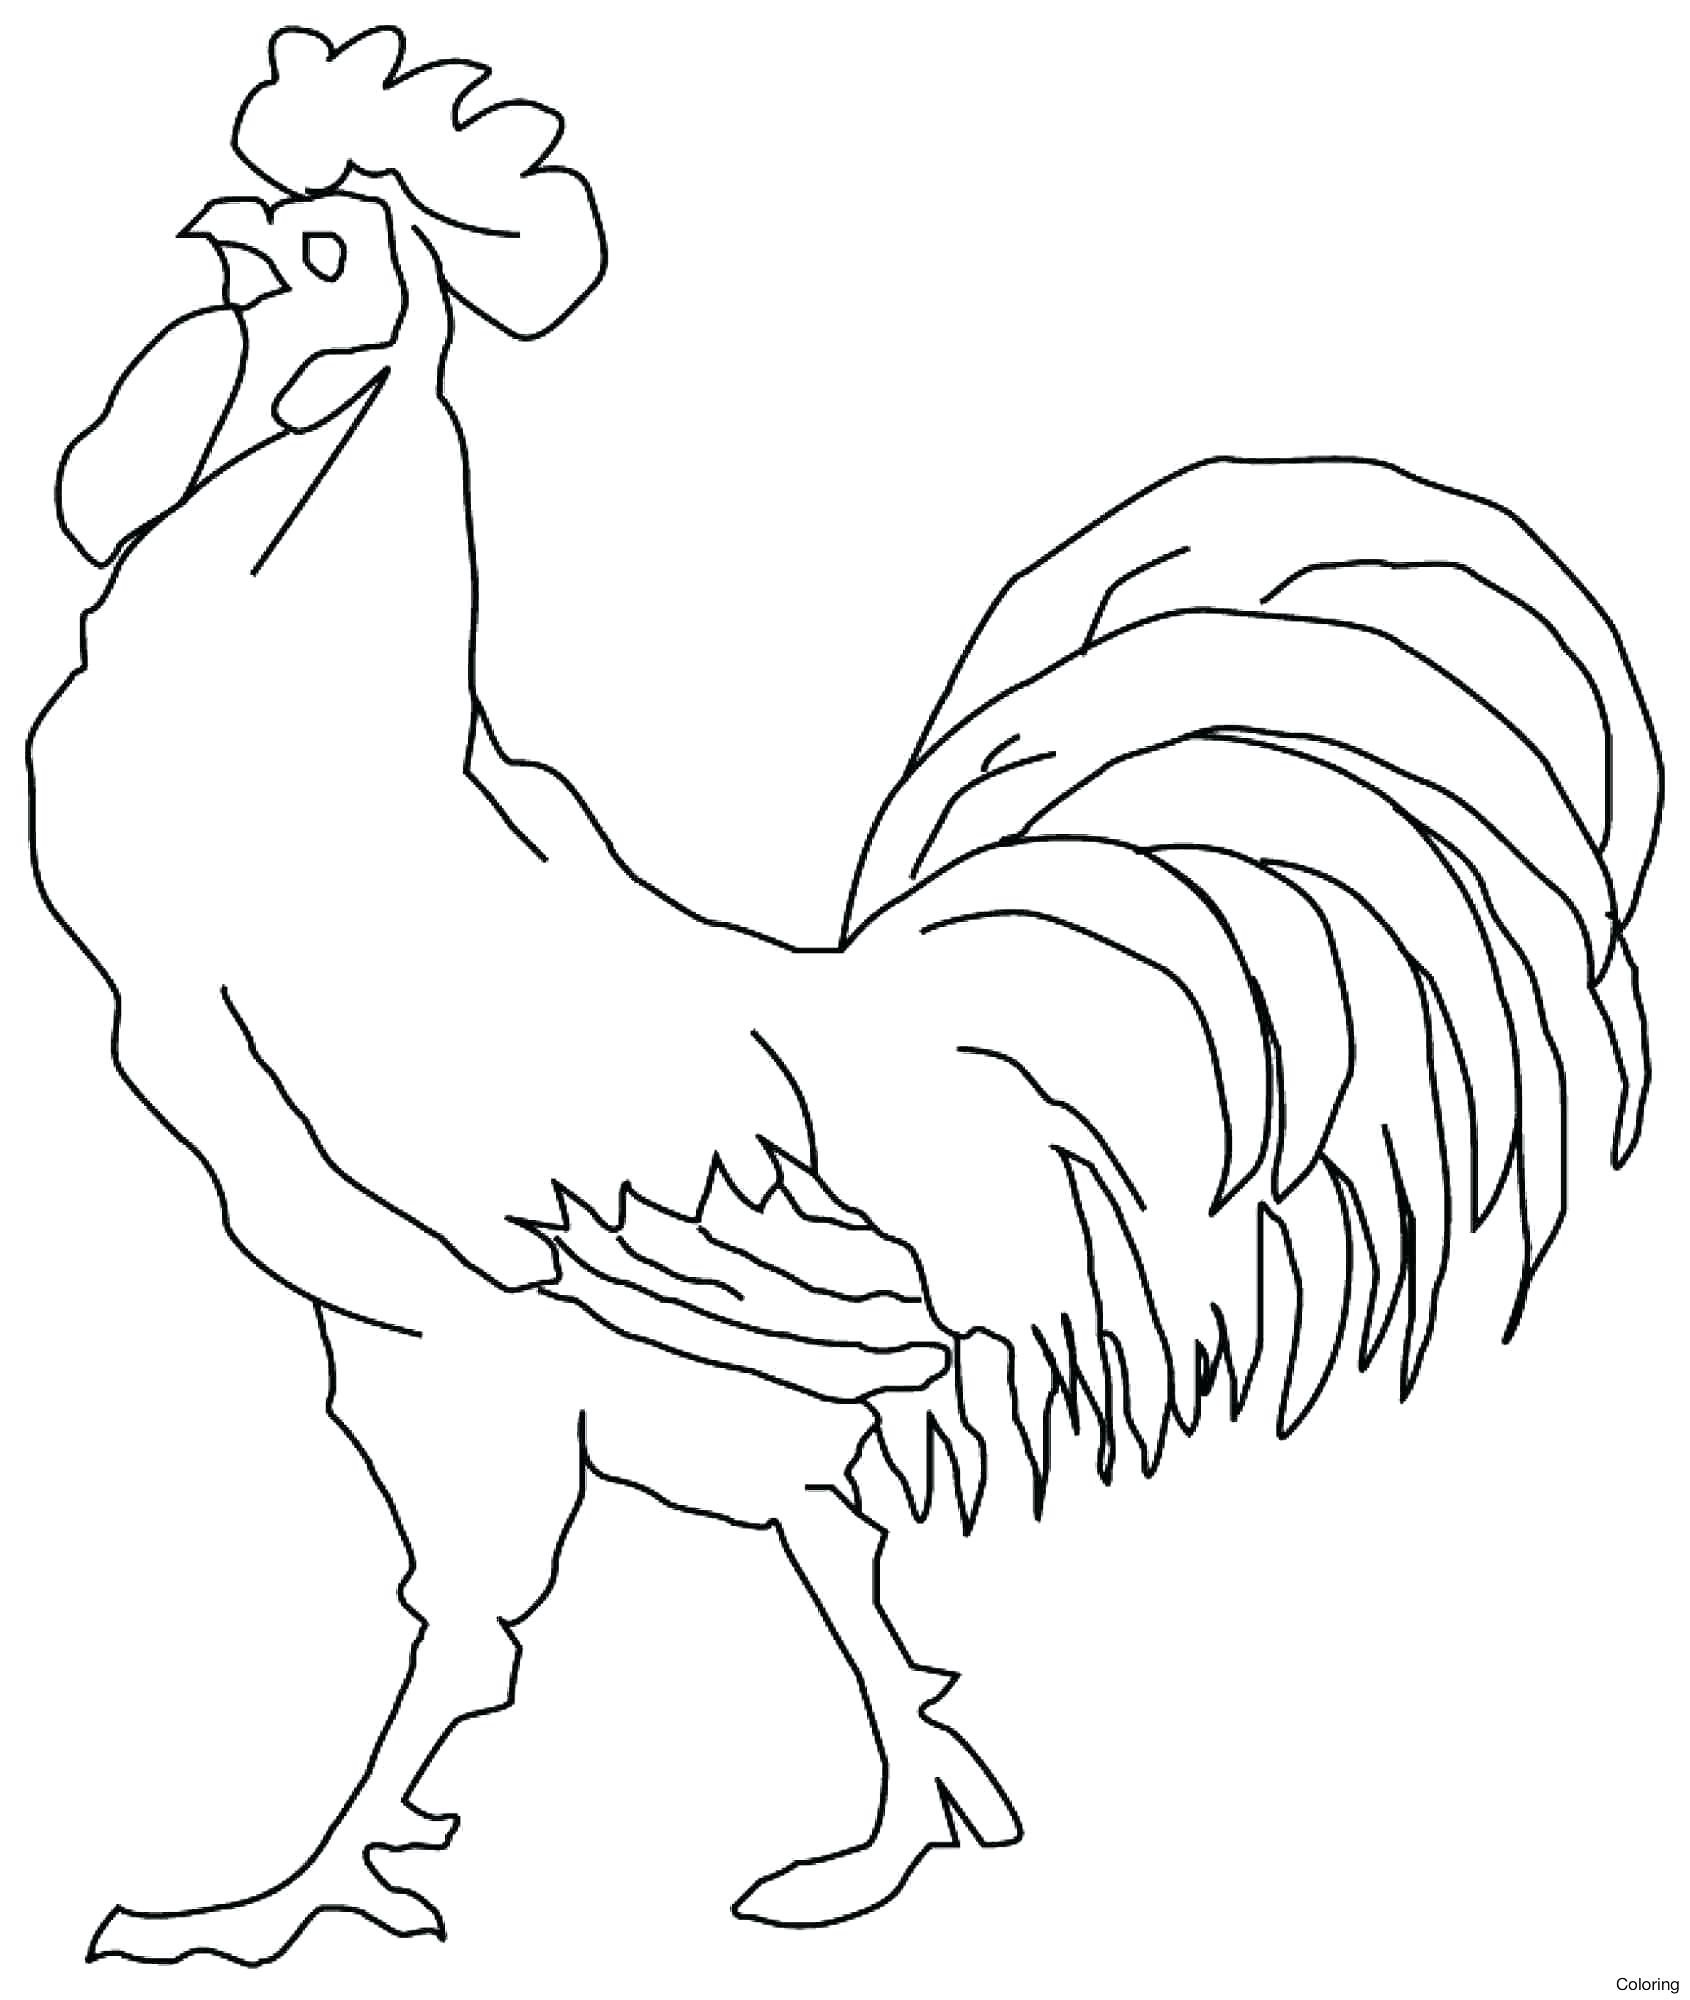 gambar sketsa ayam jantan hd